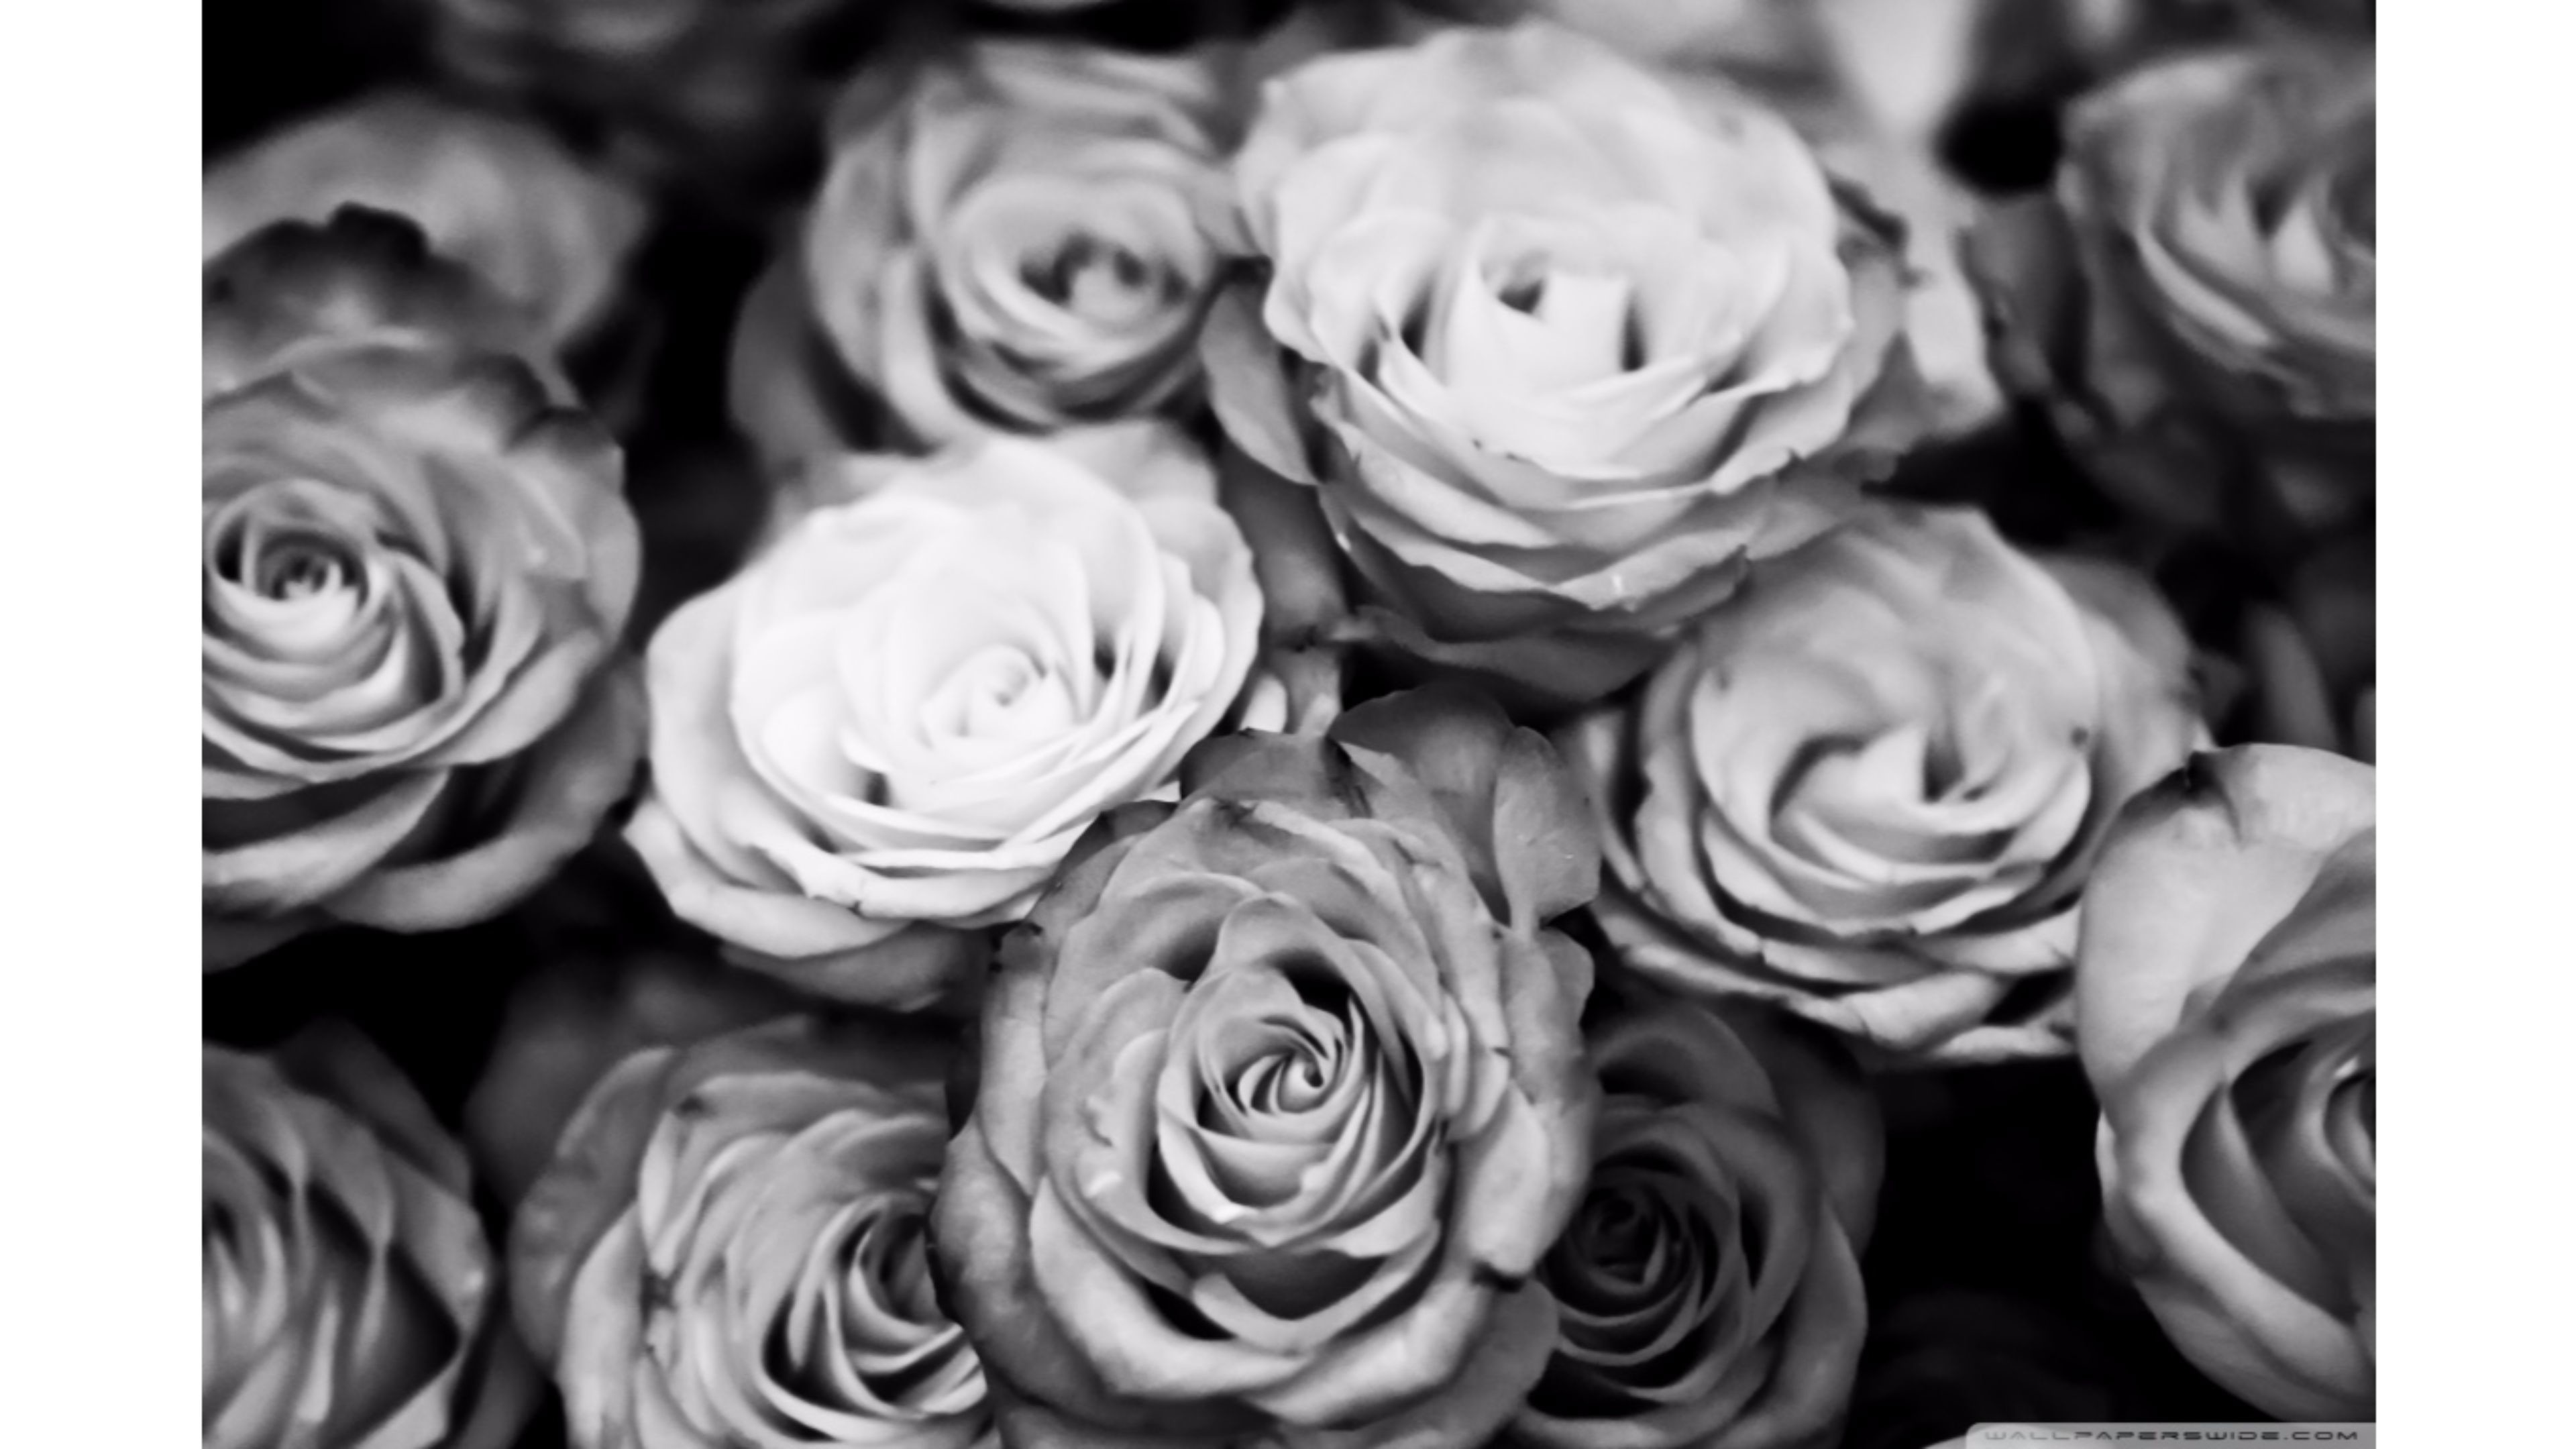 schwarz weiß rosentapete,gartenrosen,weiß,monochrome fotografie,rose,blume